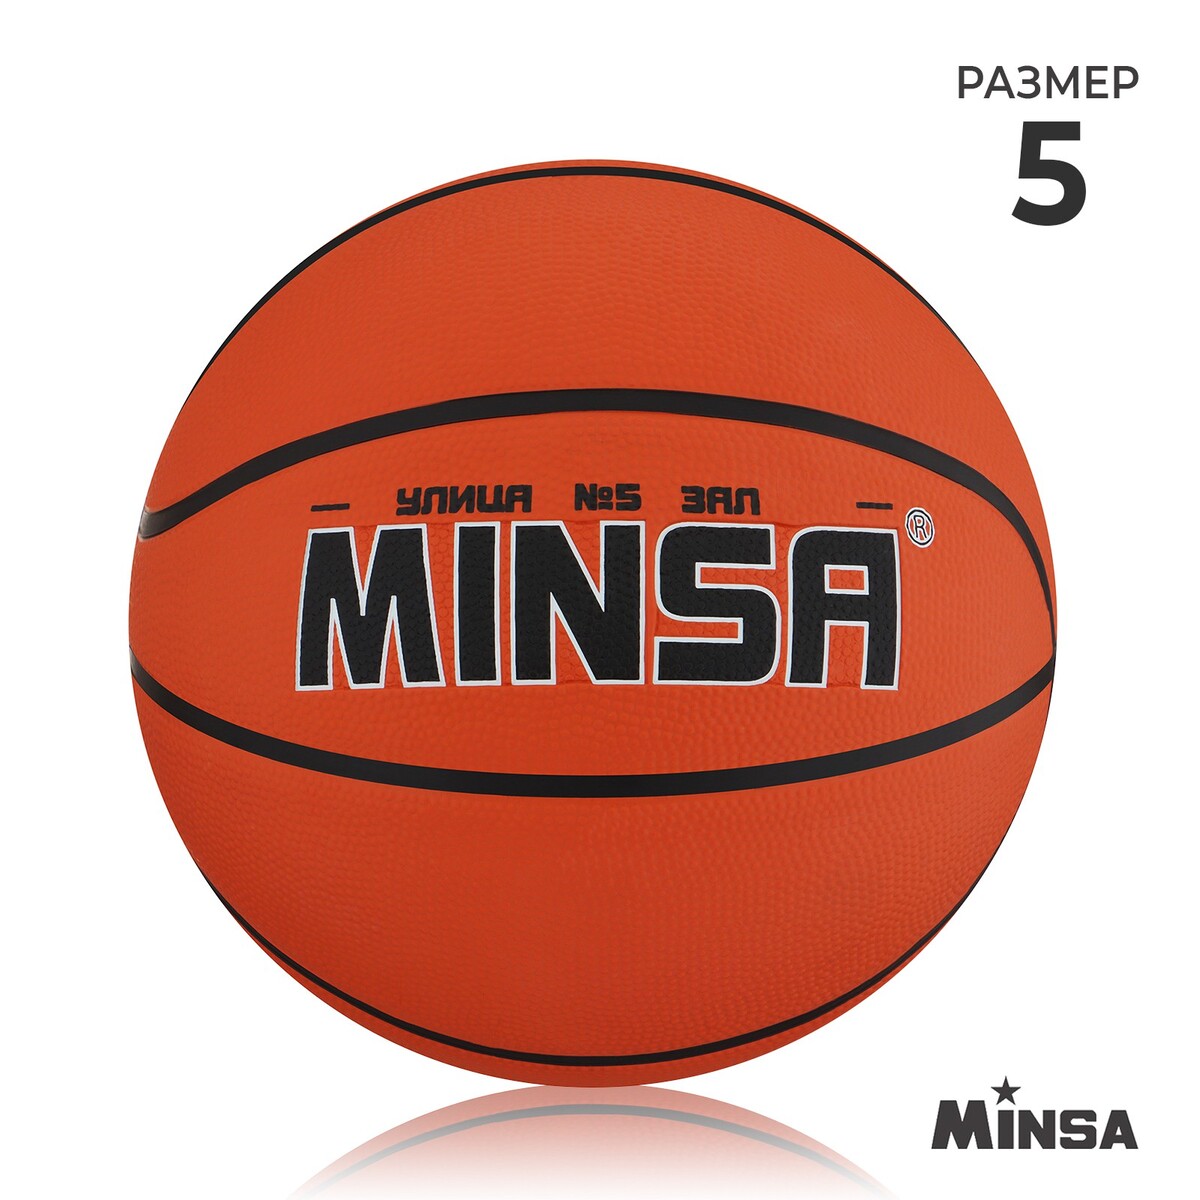 Мяч баскетбольный minsa, пвх, клееный, 8 панелей, р. 5 мяч баскетбольный minsa air power пвх клееный 8 панелей р 7